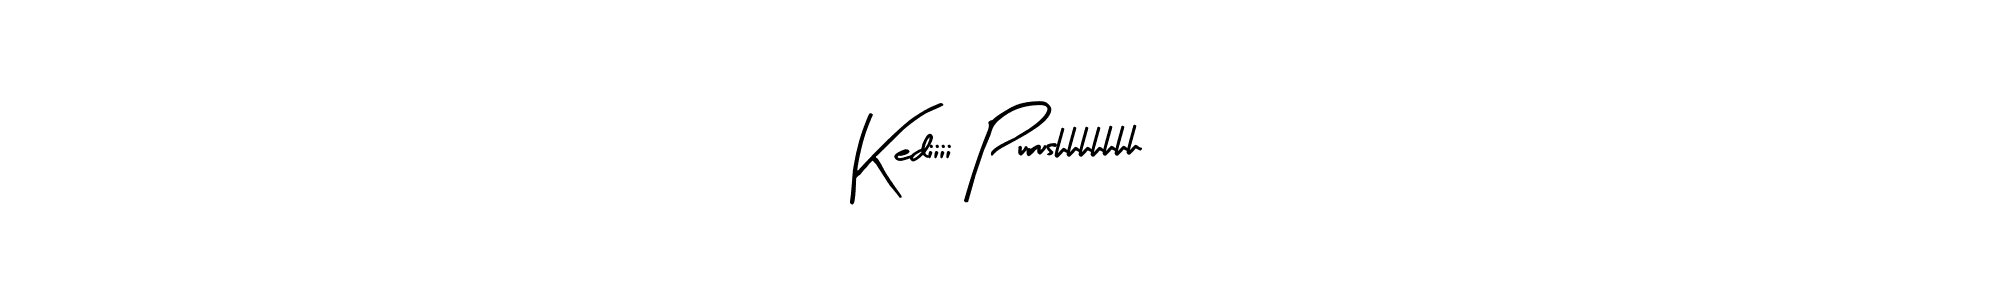 How to Draw Kediiii Purushhhhhhh signature style? Arty Signature is a latest design signature styles for name Kediiii Purushhhhhhh. Kediiii Purushhhhhhh signature style 8 images and pictures png